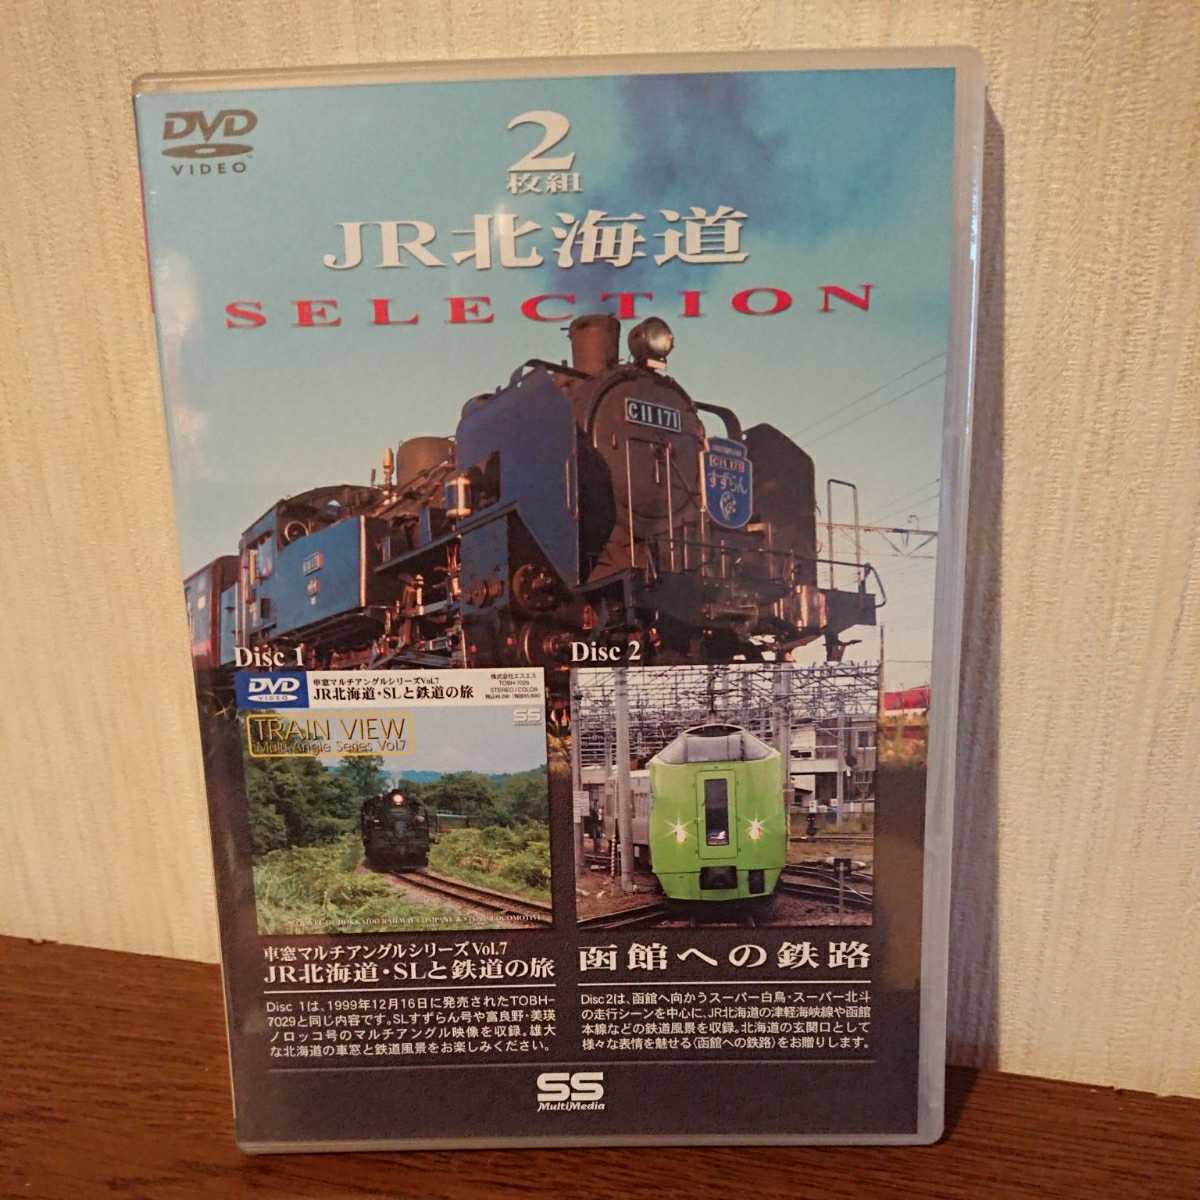 2枚組 JR北海道 Disc1『車窓マルチアングルシリーズVol.7 JR北海道・SLと鉄道の旅』、Disc2『函館への鉄路』_画像1